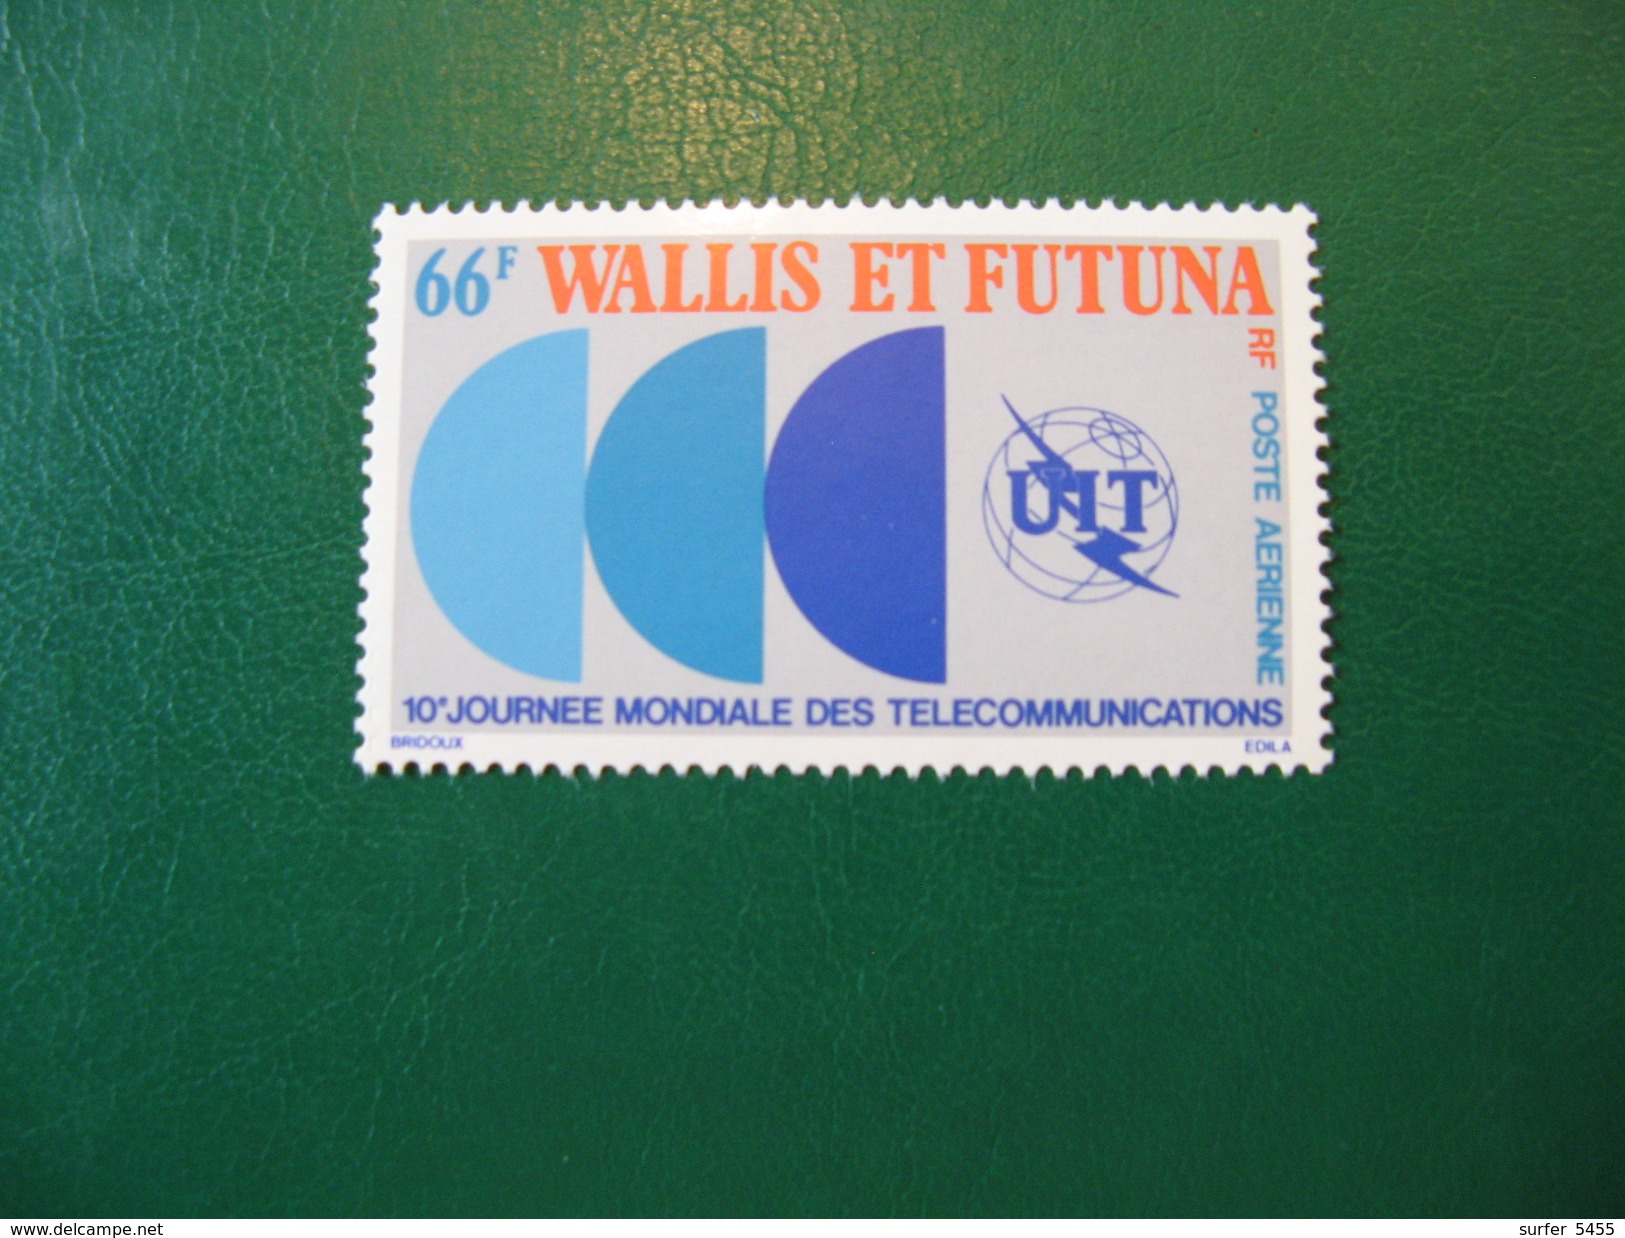 WALLIS YVERT POSTE AERIENNE N° 84 NEUF** LUXE COTE 4,00 EUROS - Unused Stamps